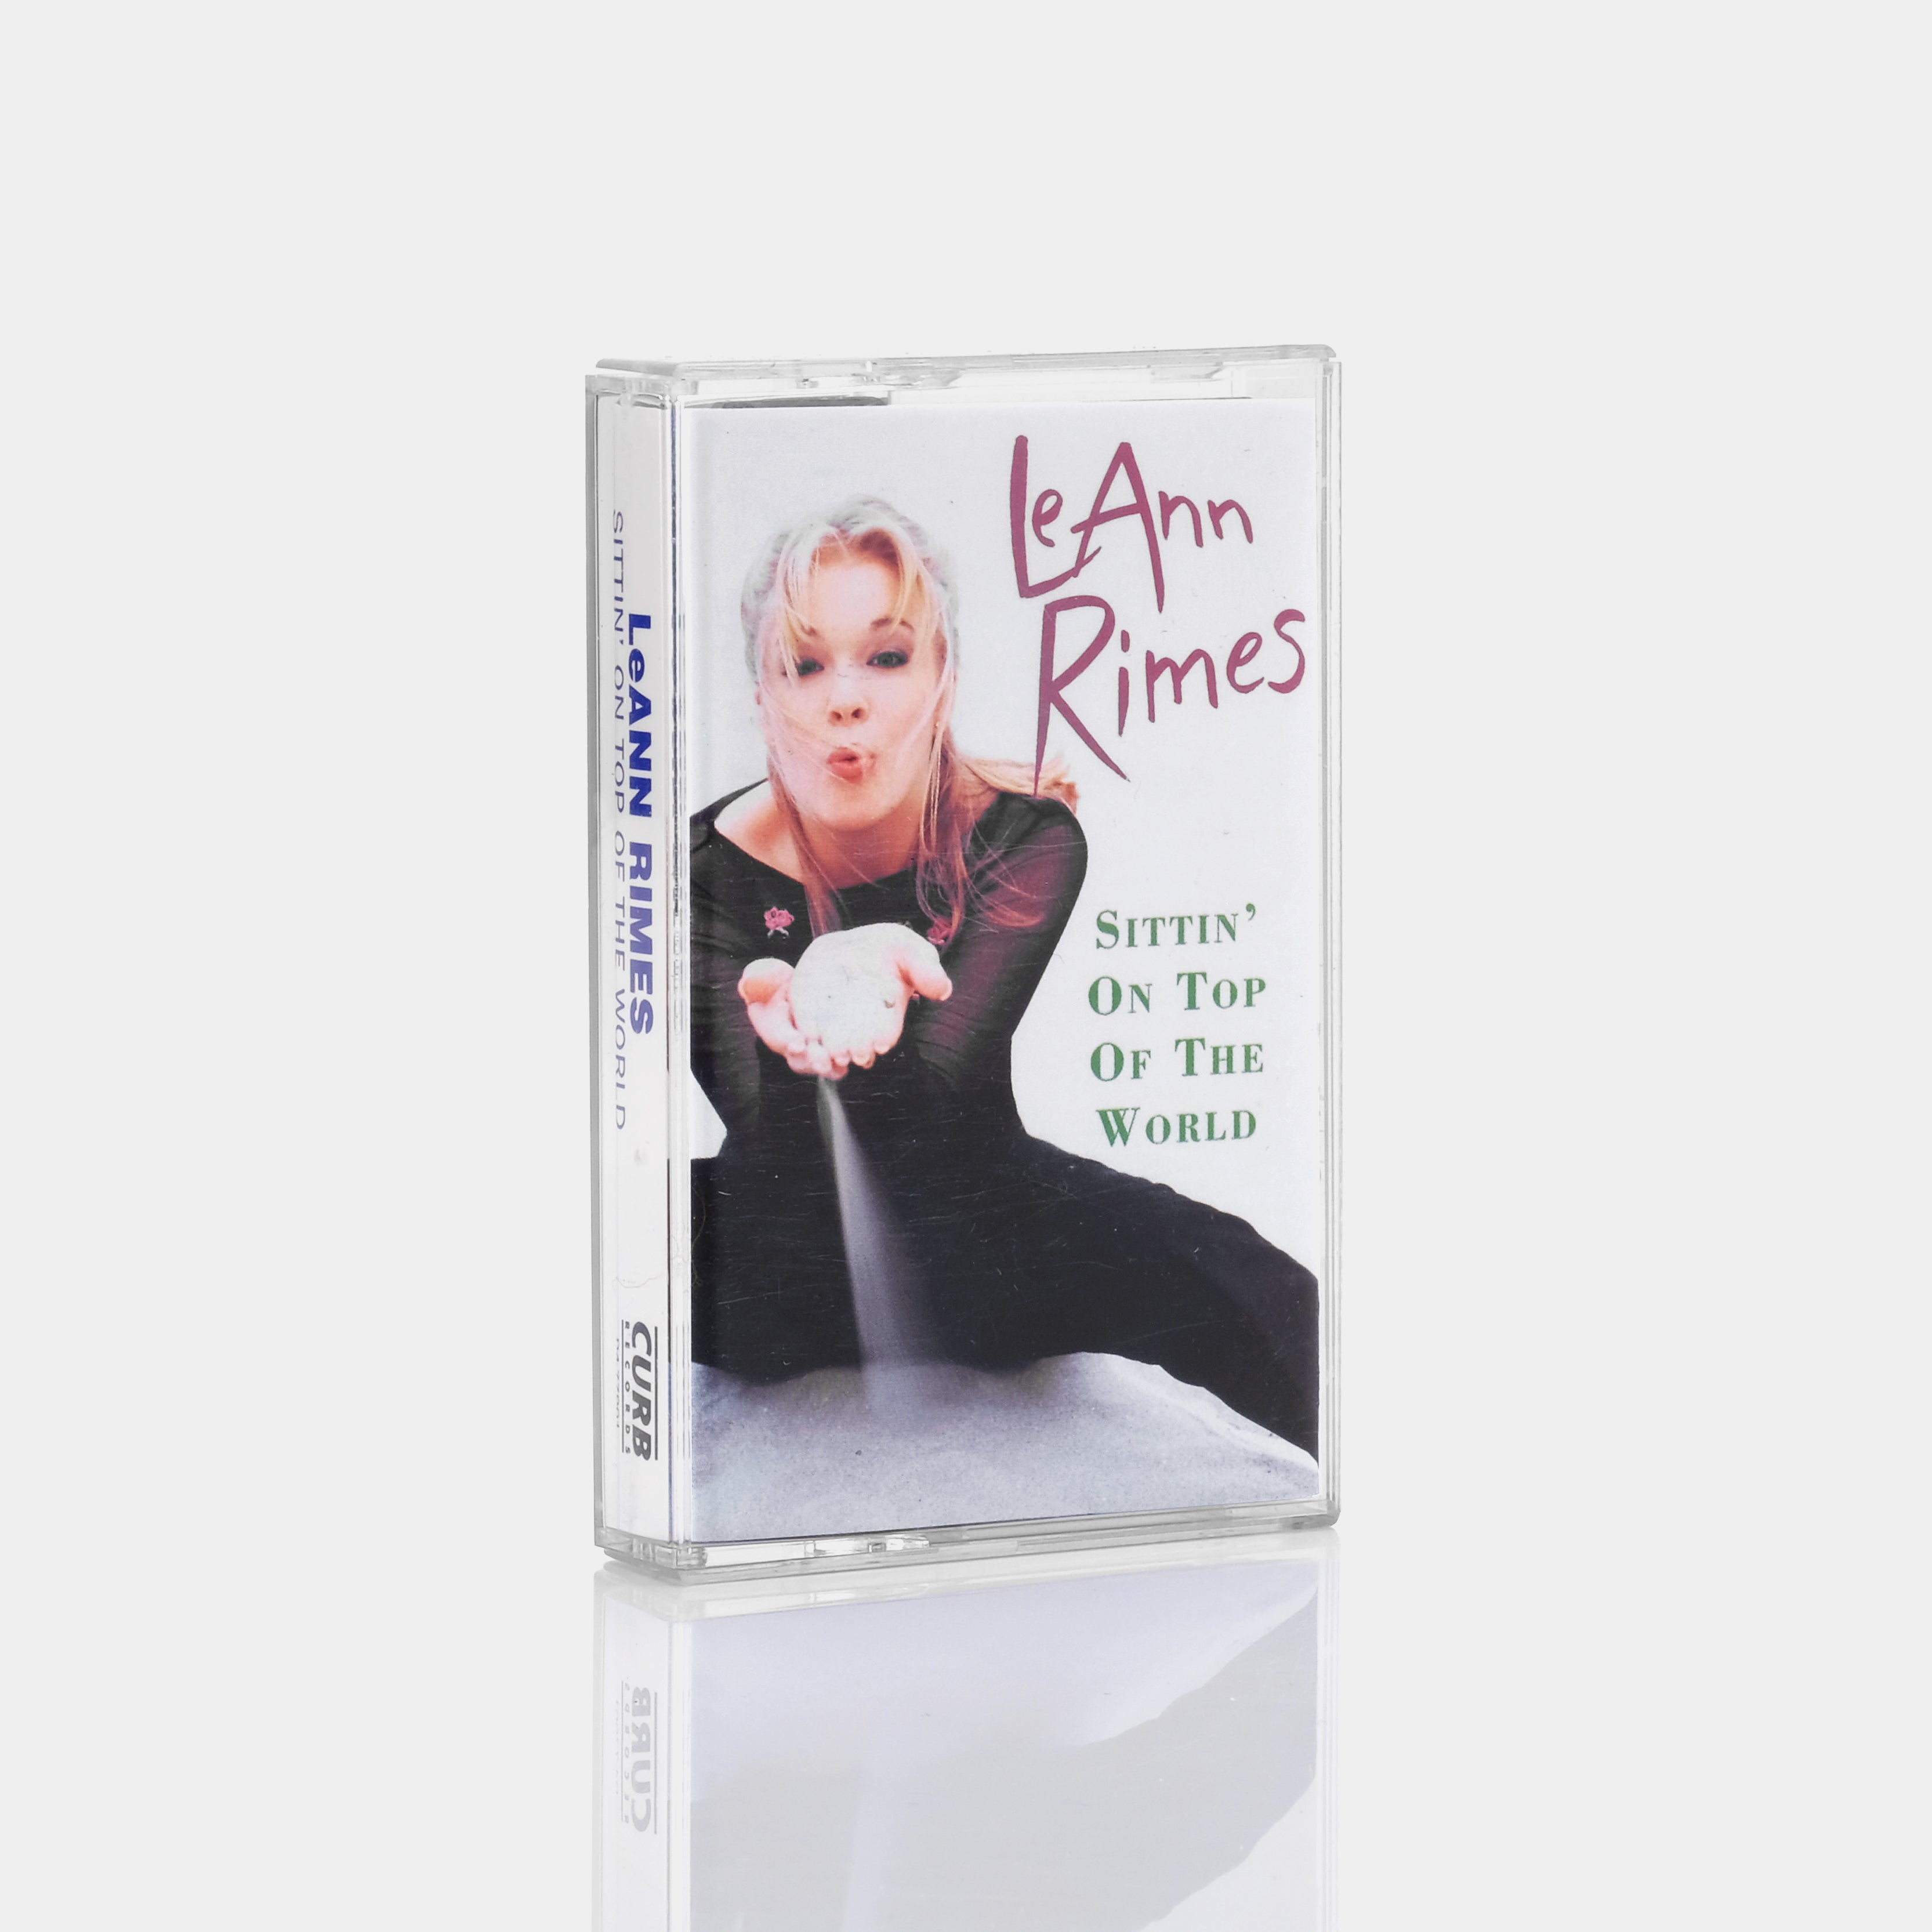 LeAnn Rimes - Sittin' On Top Of The World Cassette Tape